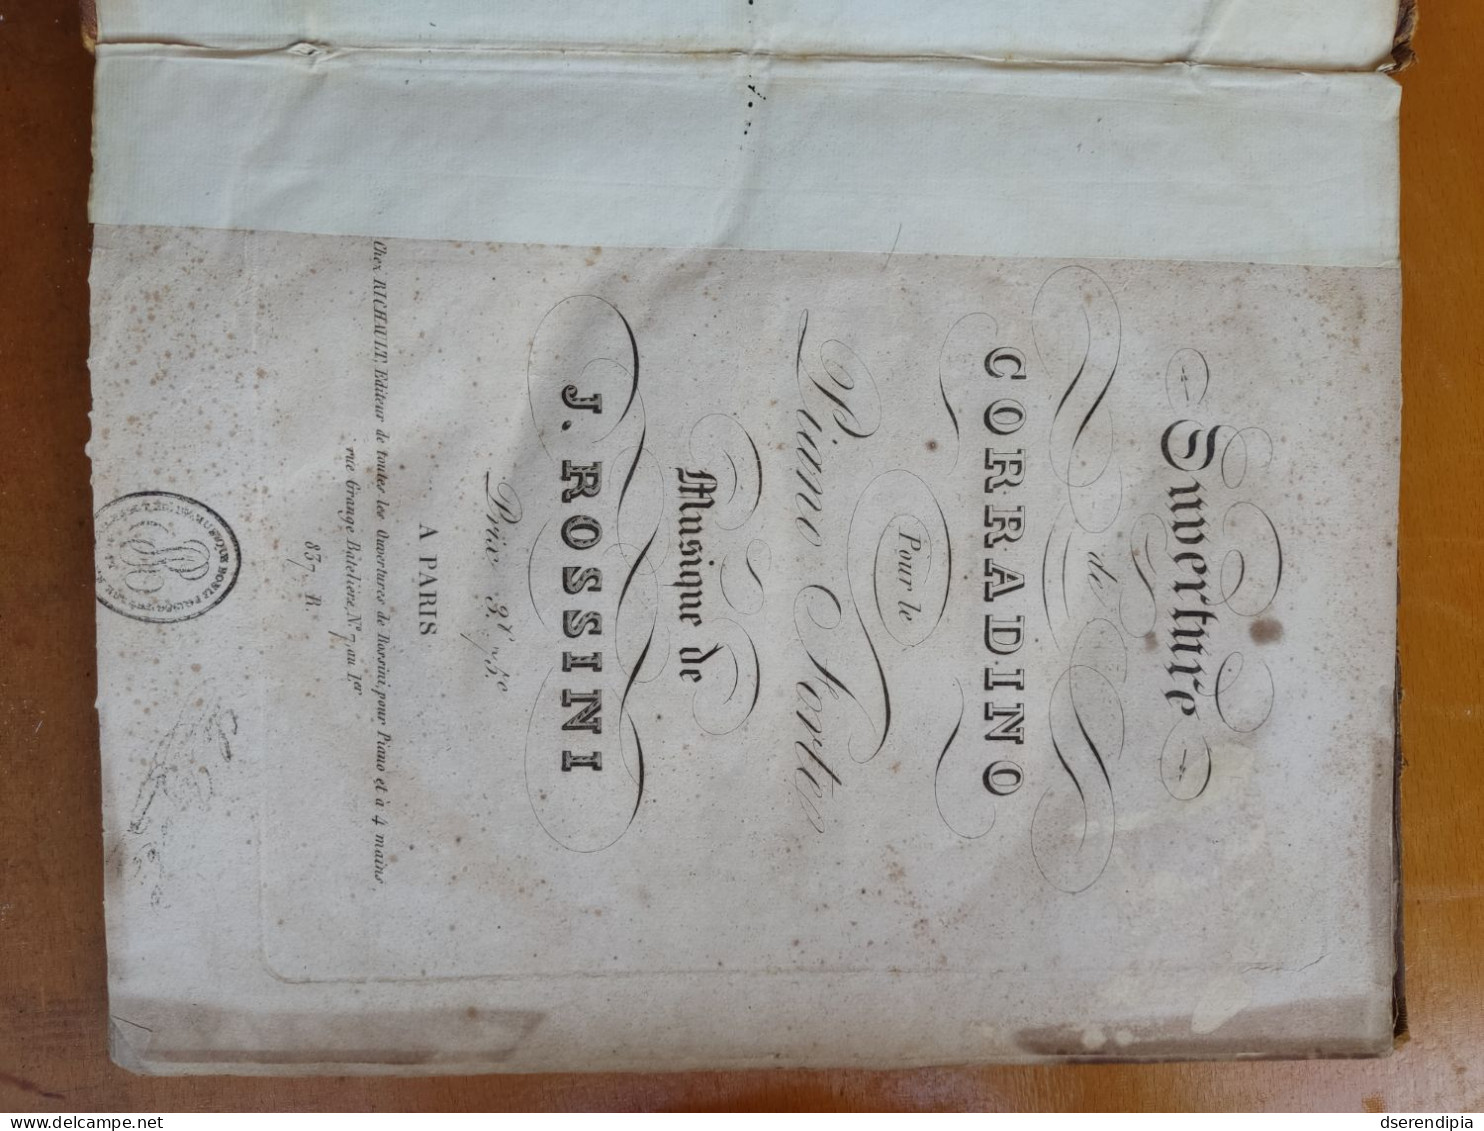 Ediciones tempranas, partituras de G.Rossini.1821-1829.1a Obra de M.San Clemente,organista Catedral de Sevilla.Muy rara.